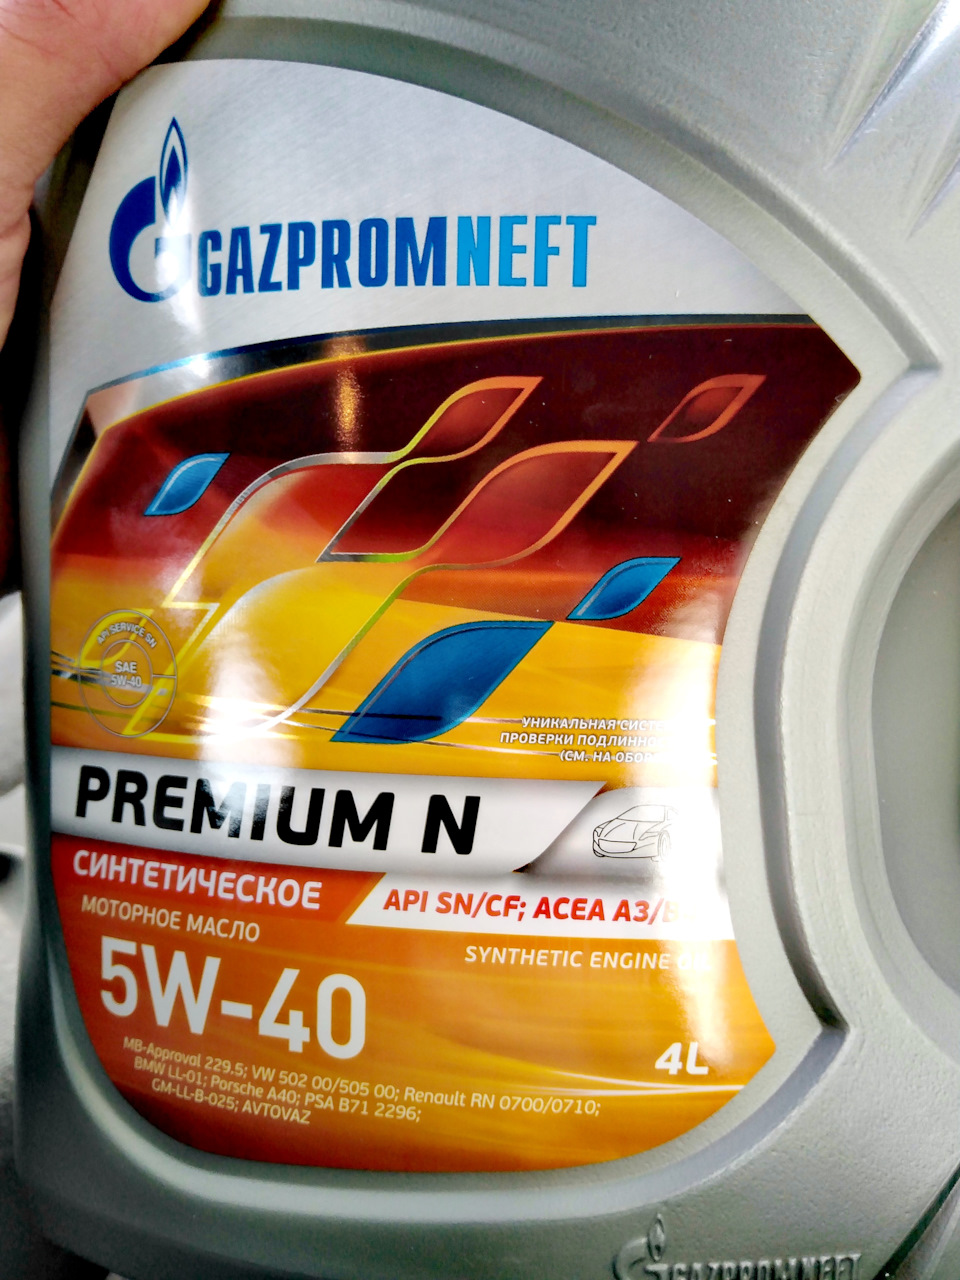 Газпромнефть проверить код подлинности. Эксперименты с моторным маслом. Какой плёнкой заклеивают масло Газпромнефть под крышкой.